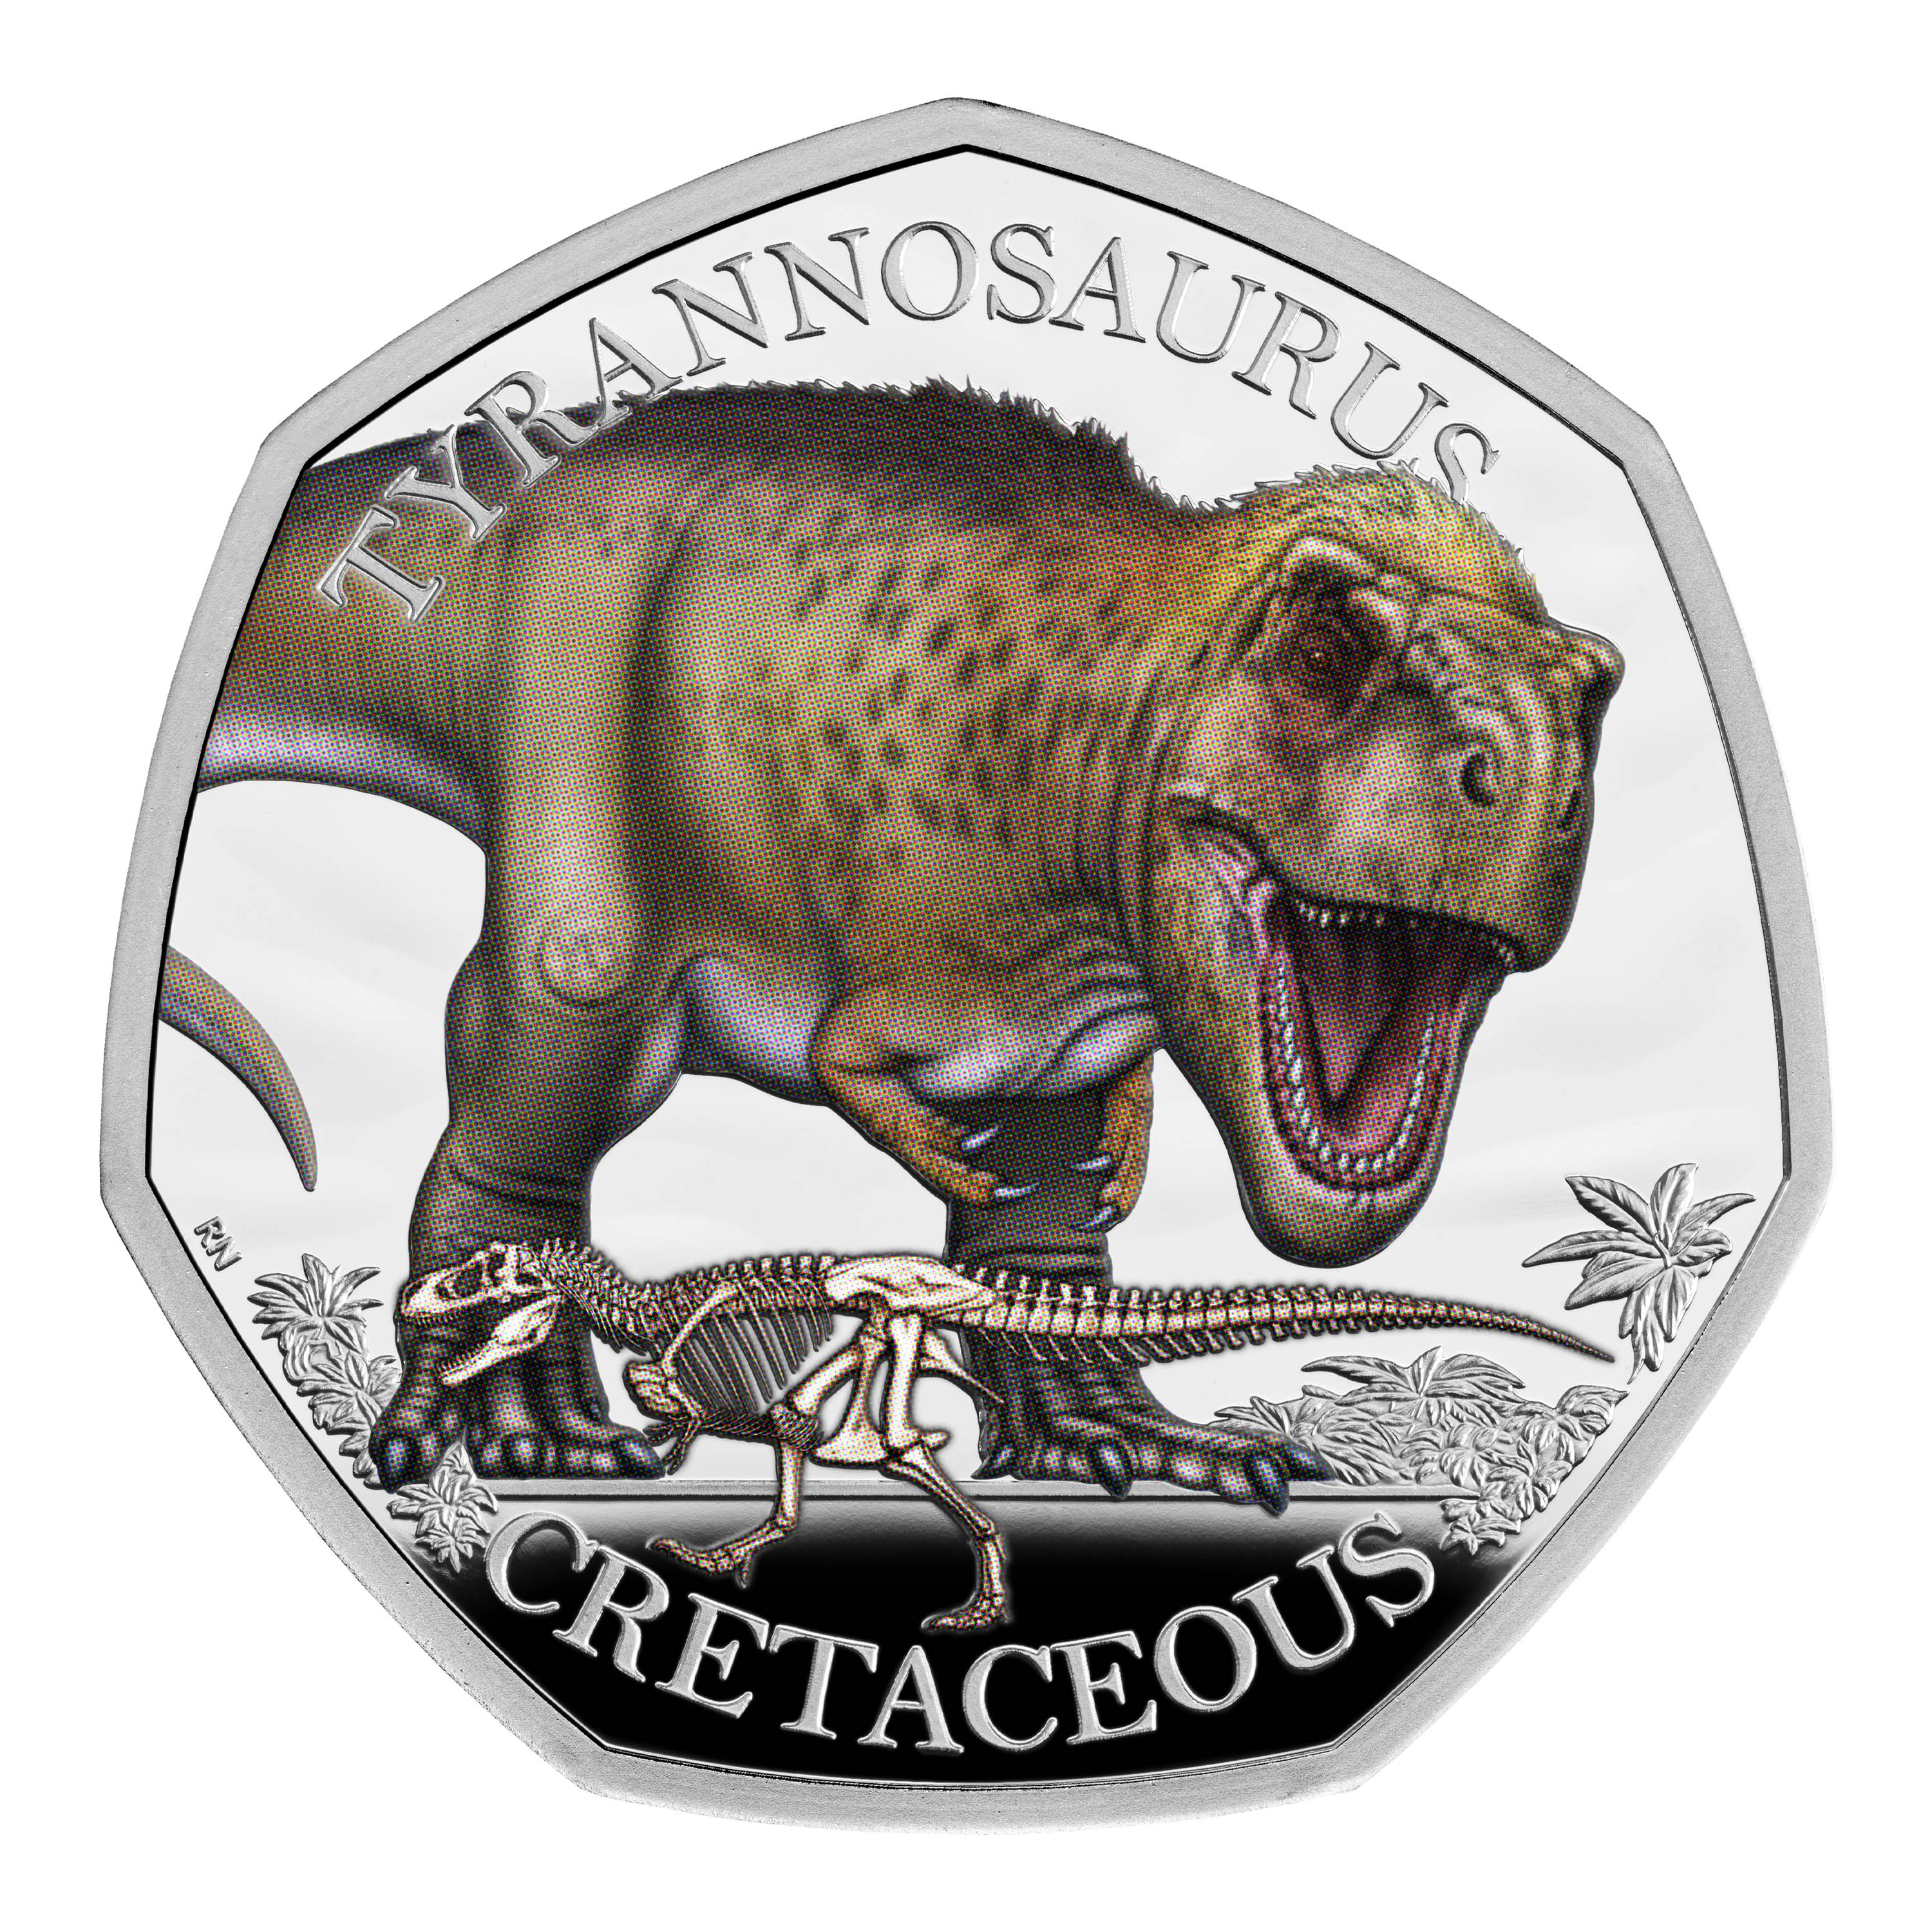 Der furchterregende Tyrannosaurus ist ebenfalls Teil der Sammlung, die Sammler ab 11 £ kosten wird